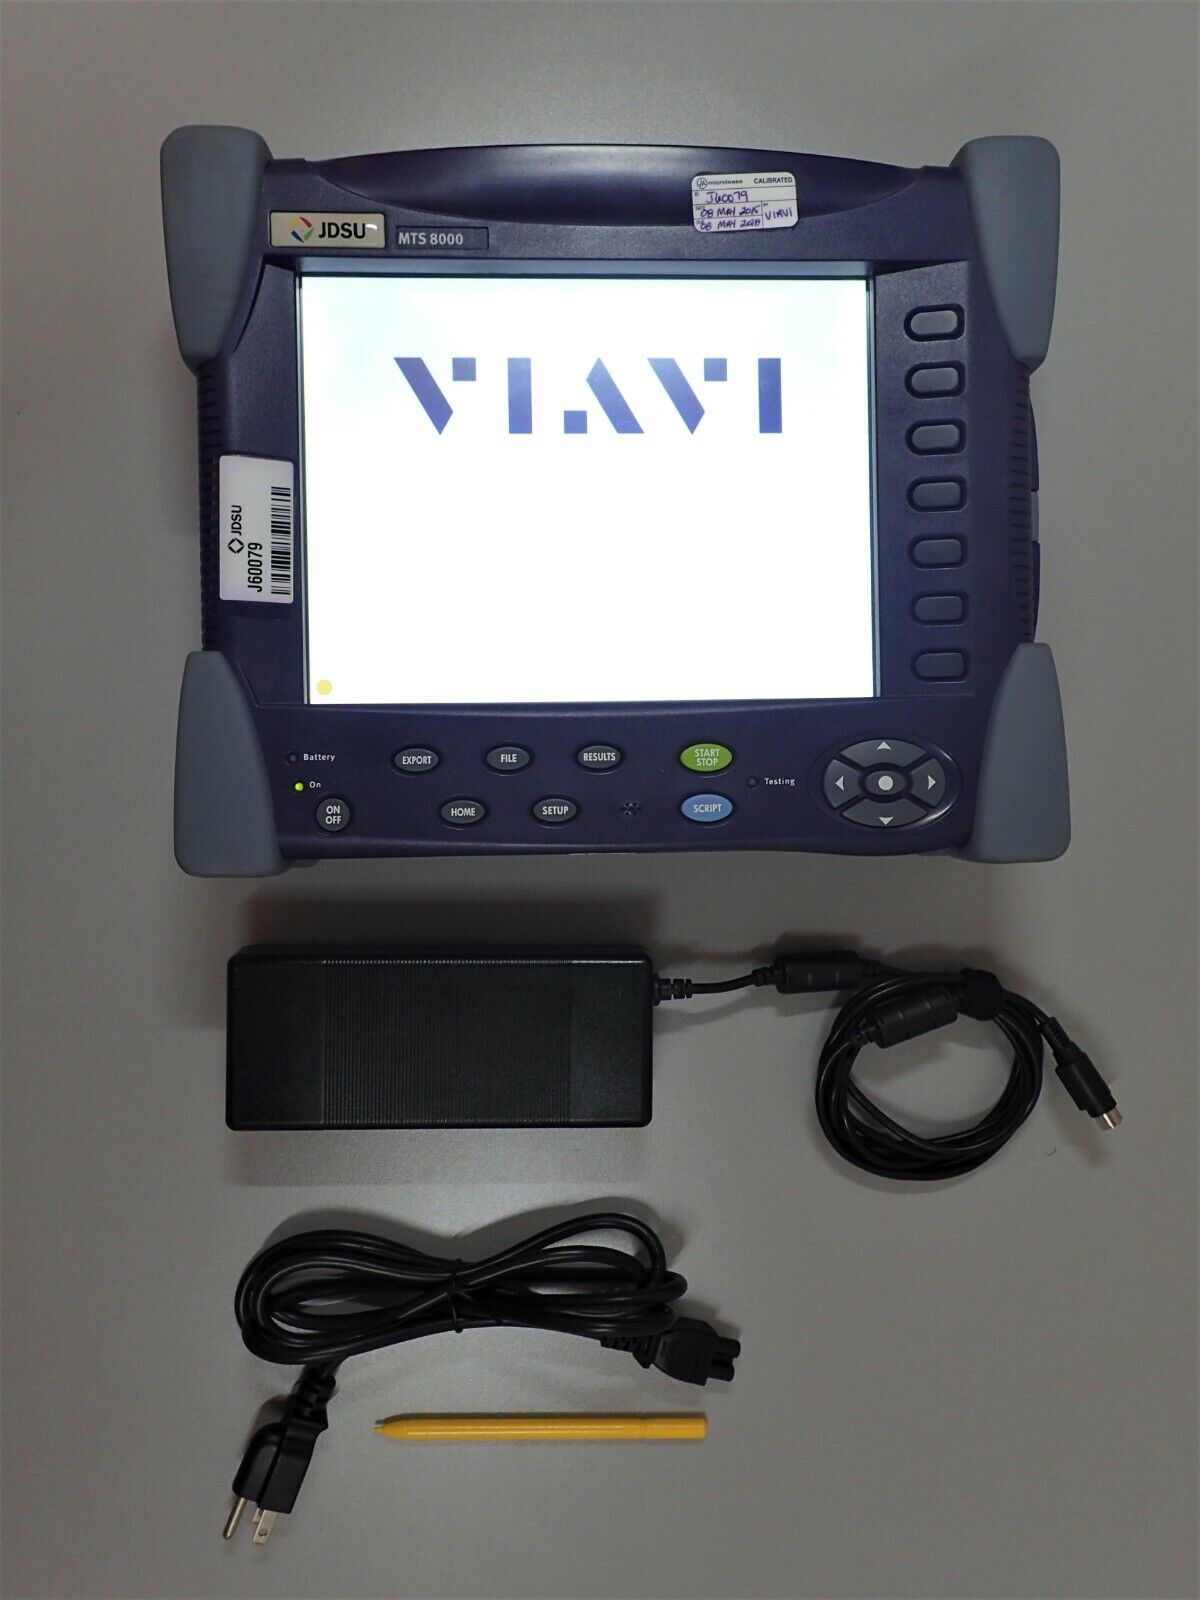 JDSU VIAVI MTS 8000E V2 Optical Test Platform Mainframe with Touchscreen